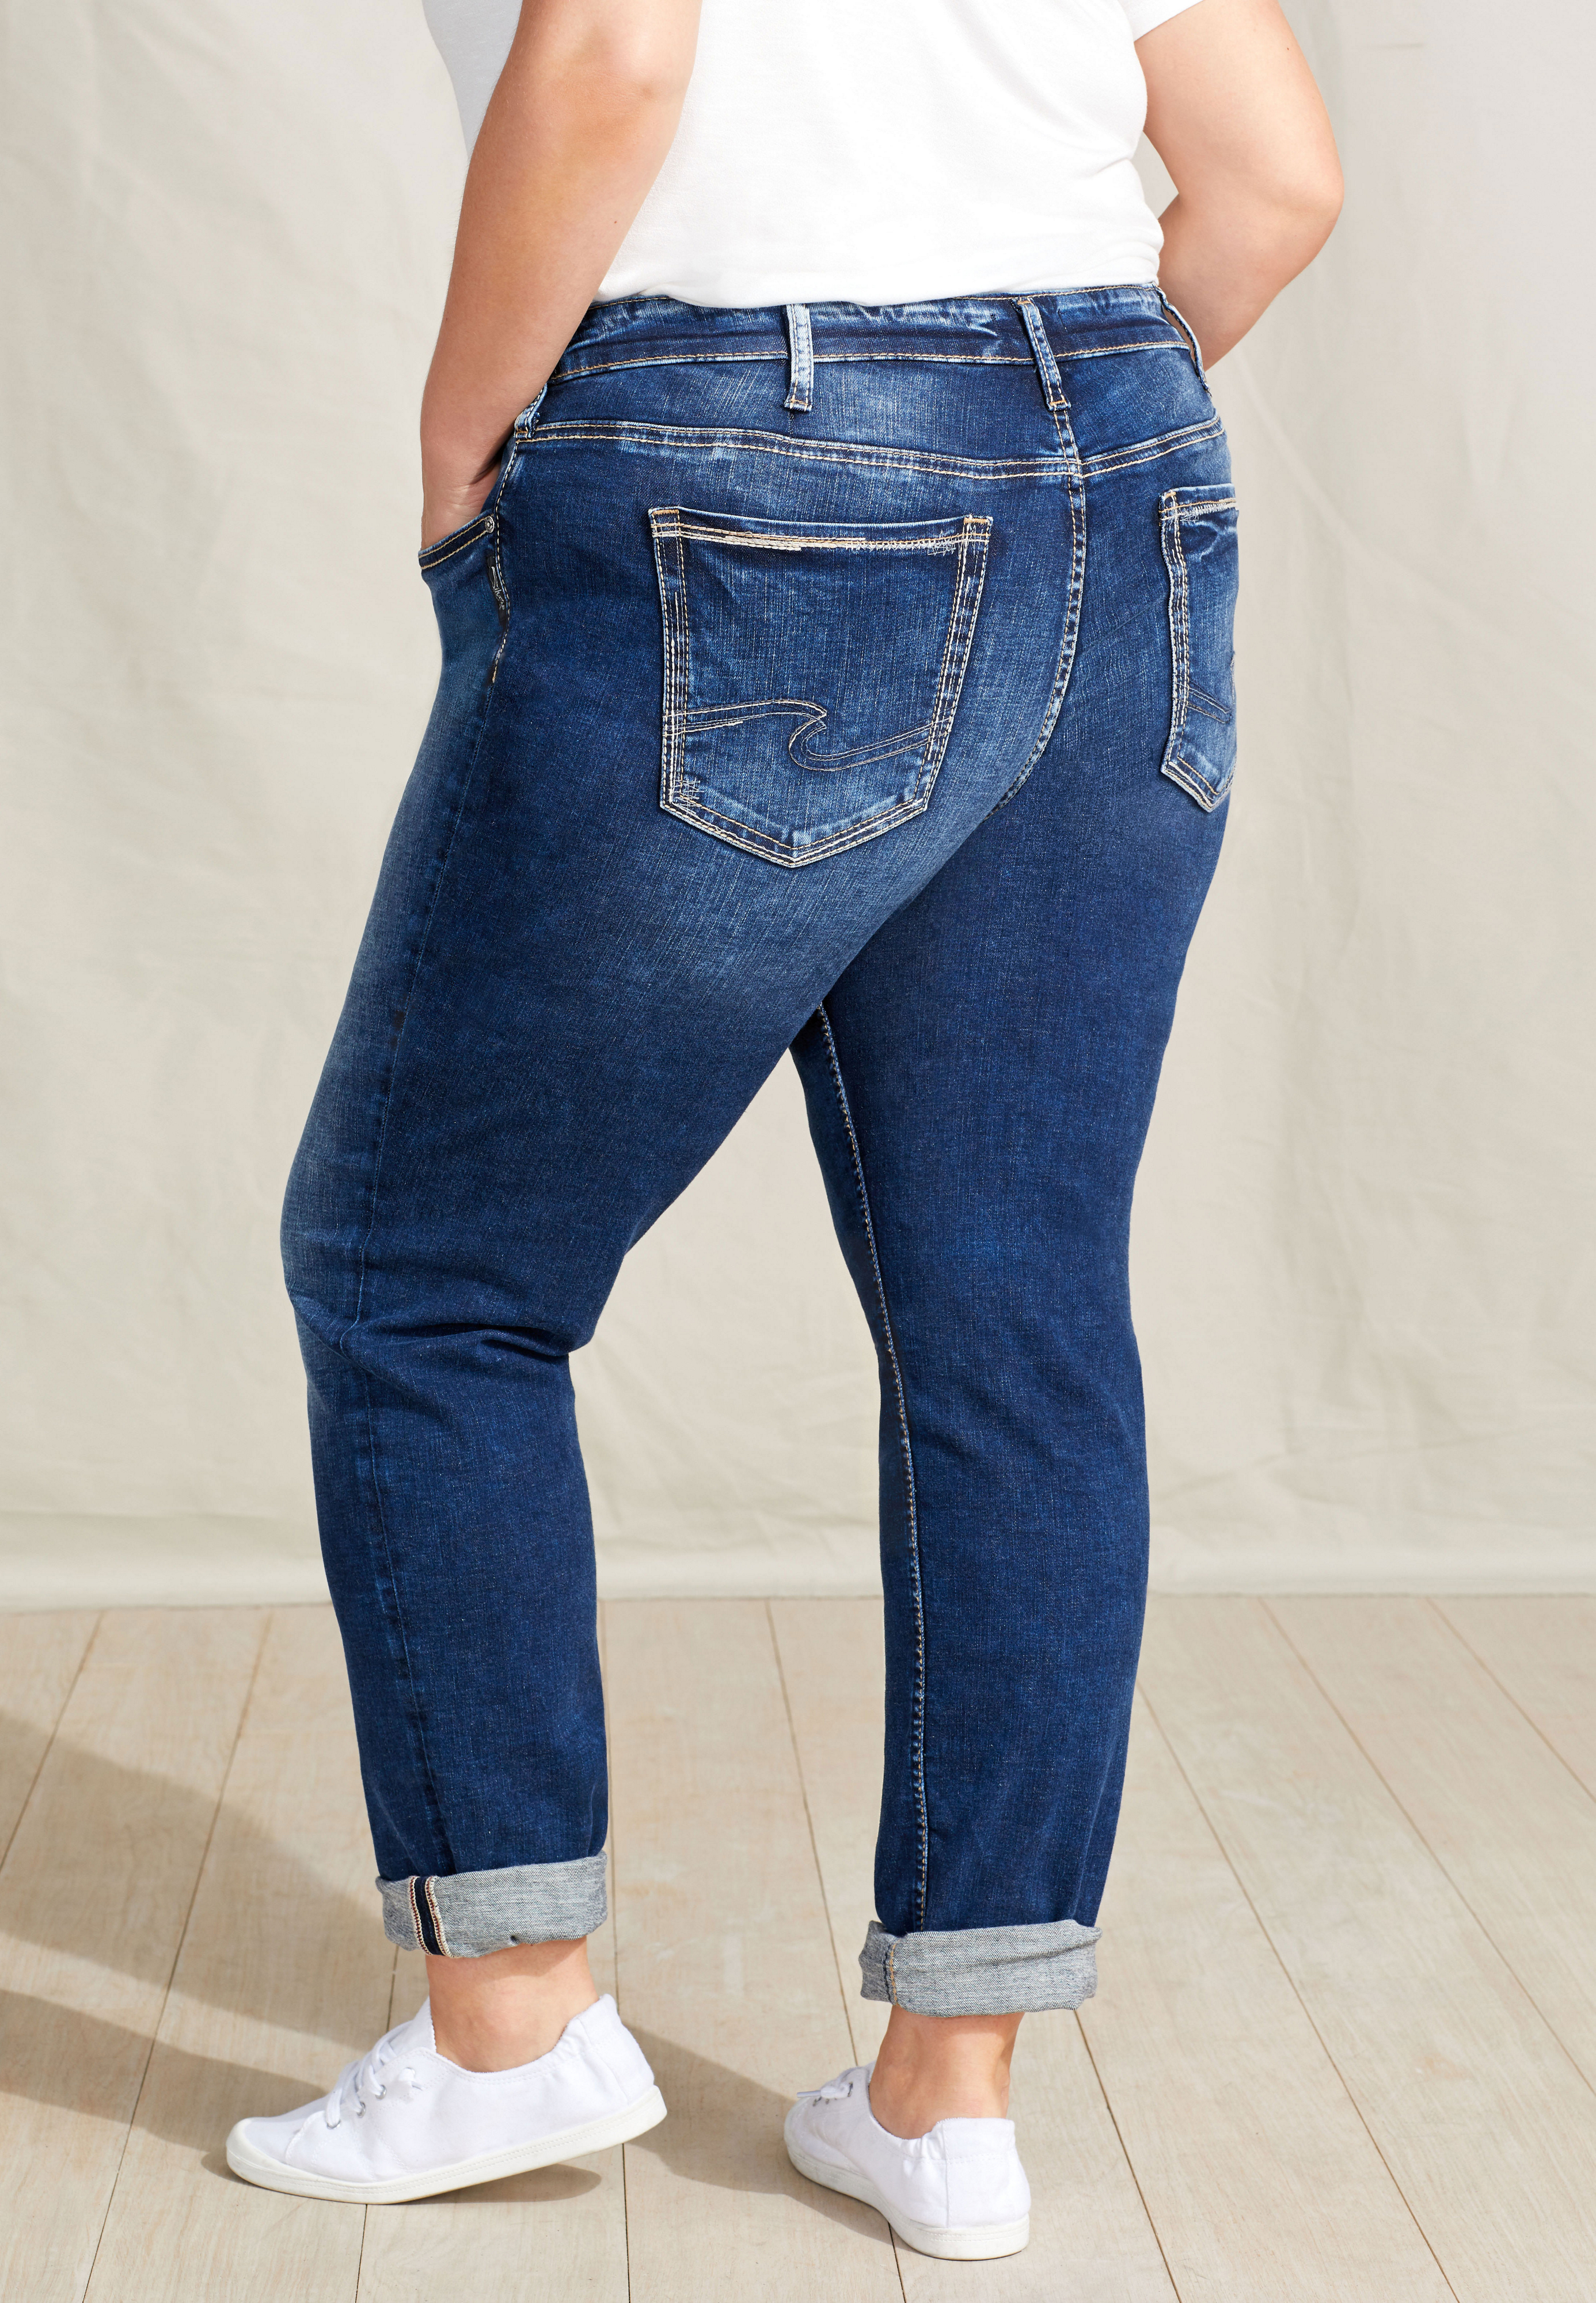 silver jeans women's size 18